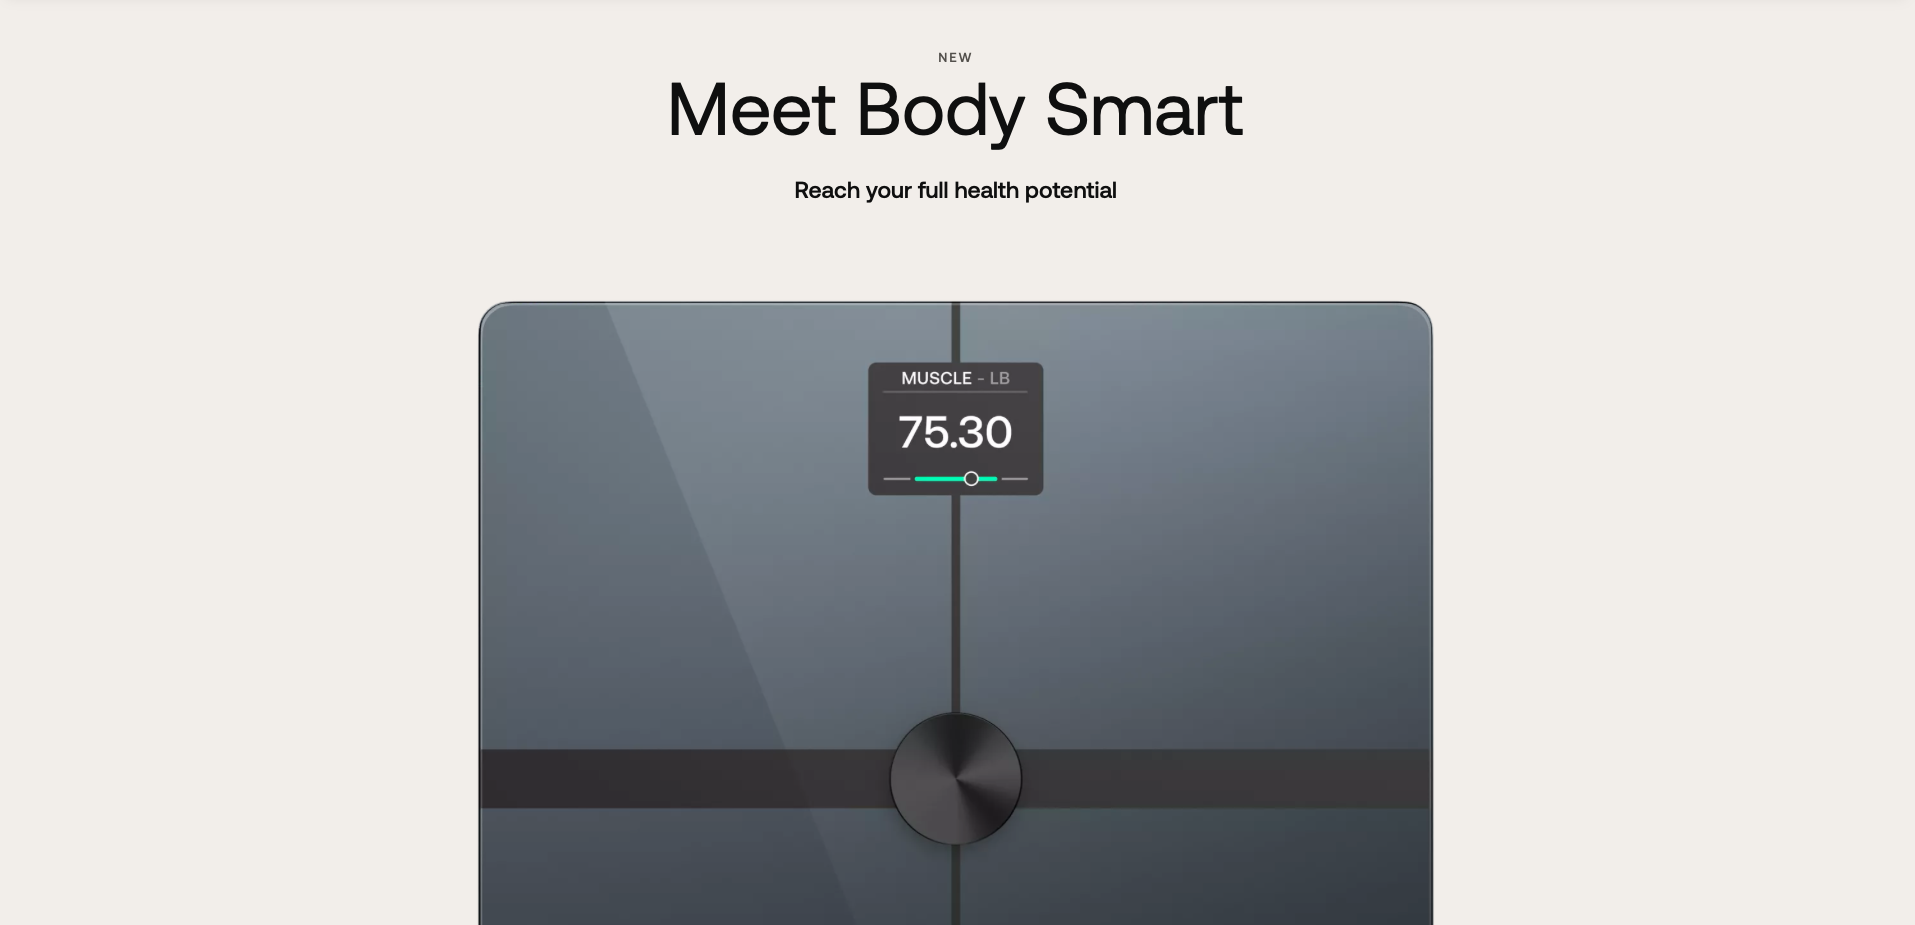 Withings presenta Body Smart Scale: báscula inteligente con pantalla LCD y compatibilidad con Apple Health/Google Fit